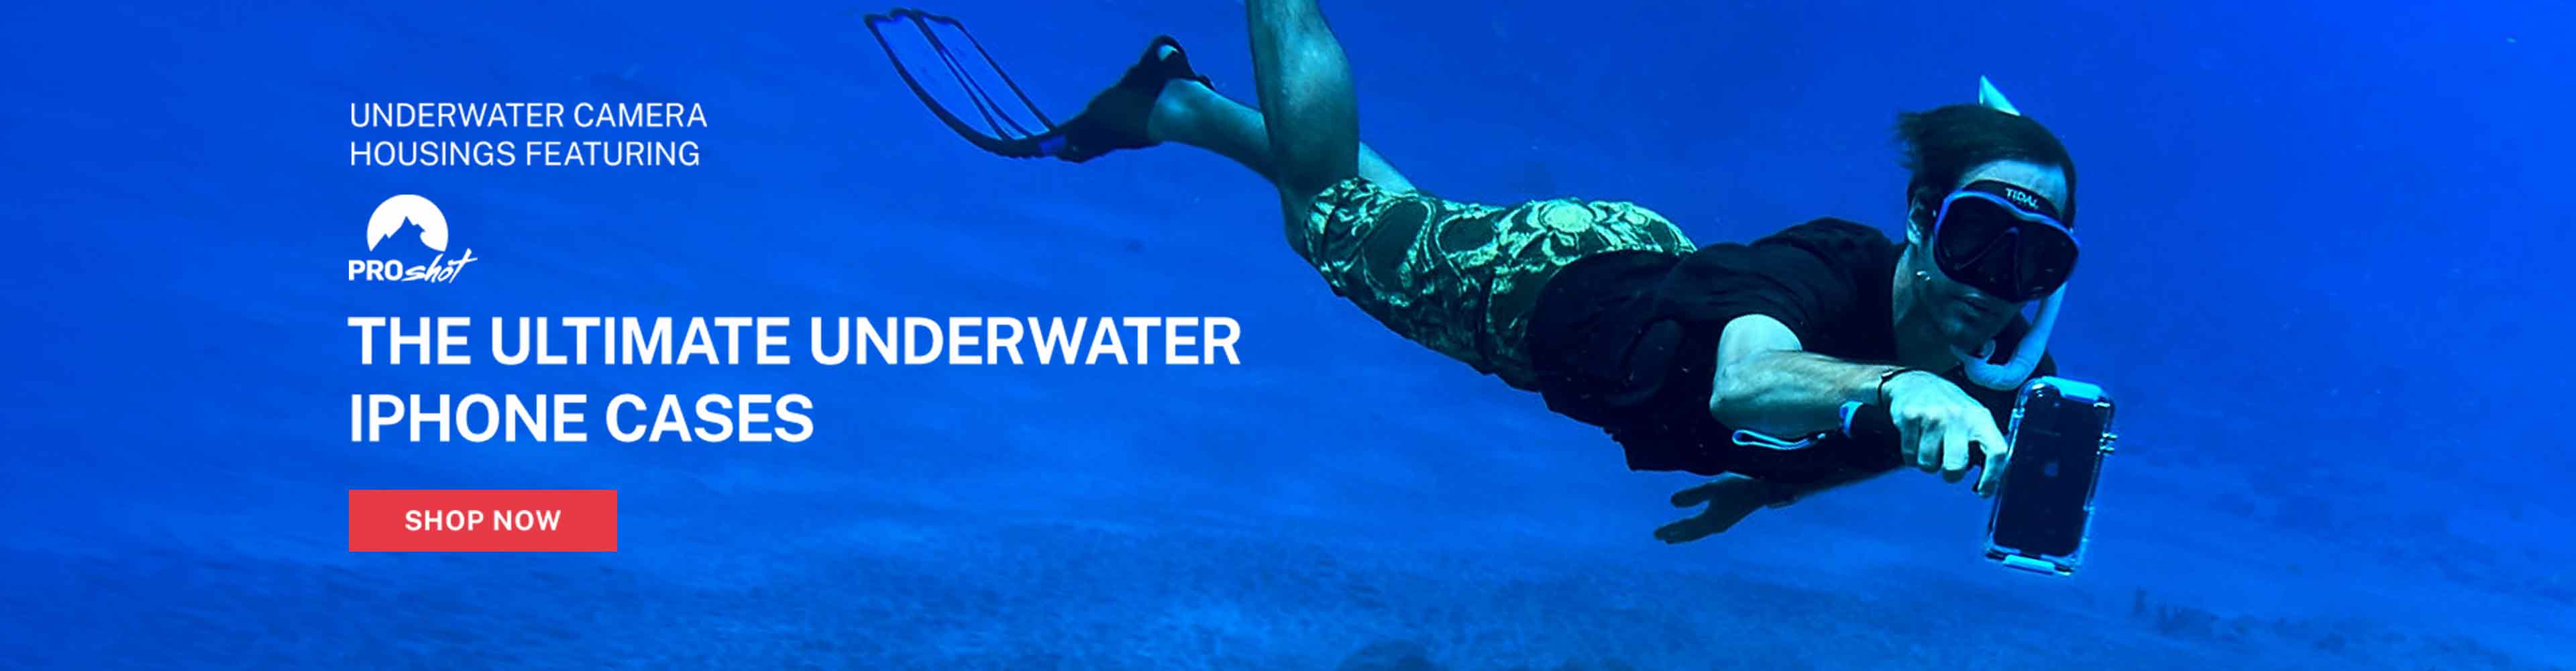 Scuba Diving Snorkeling Underwater